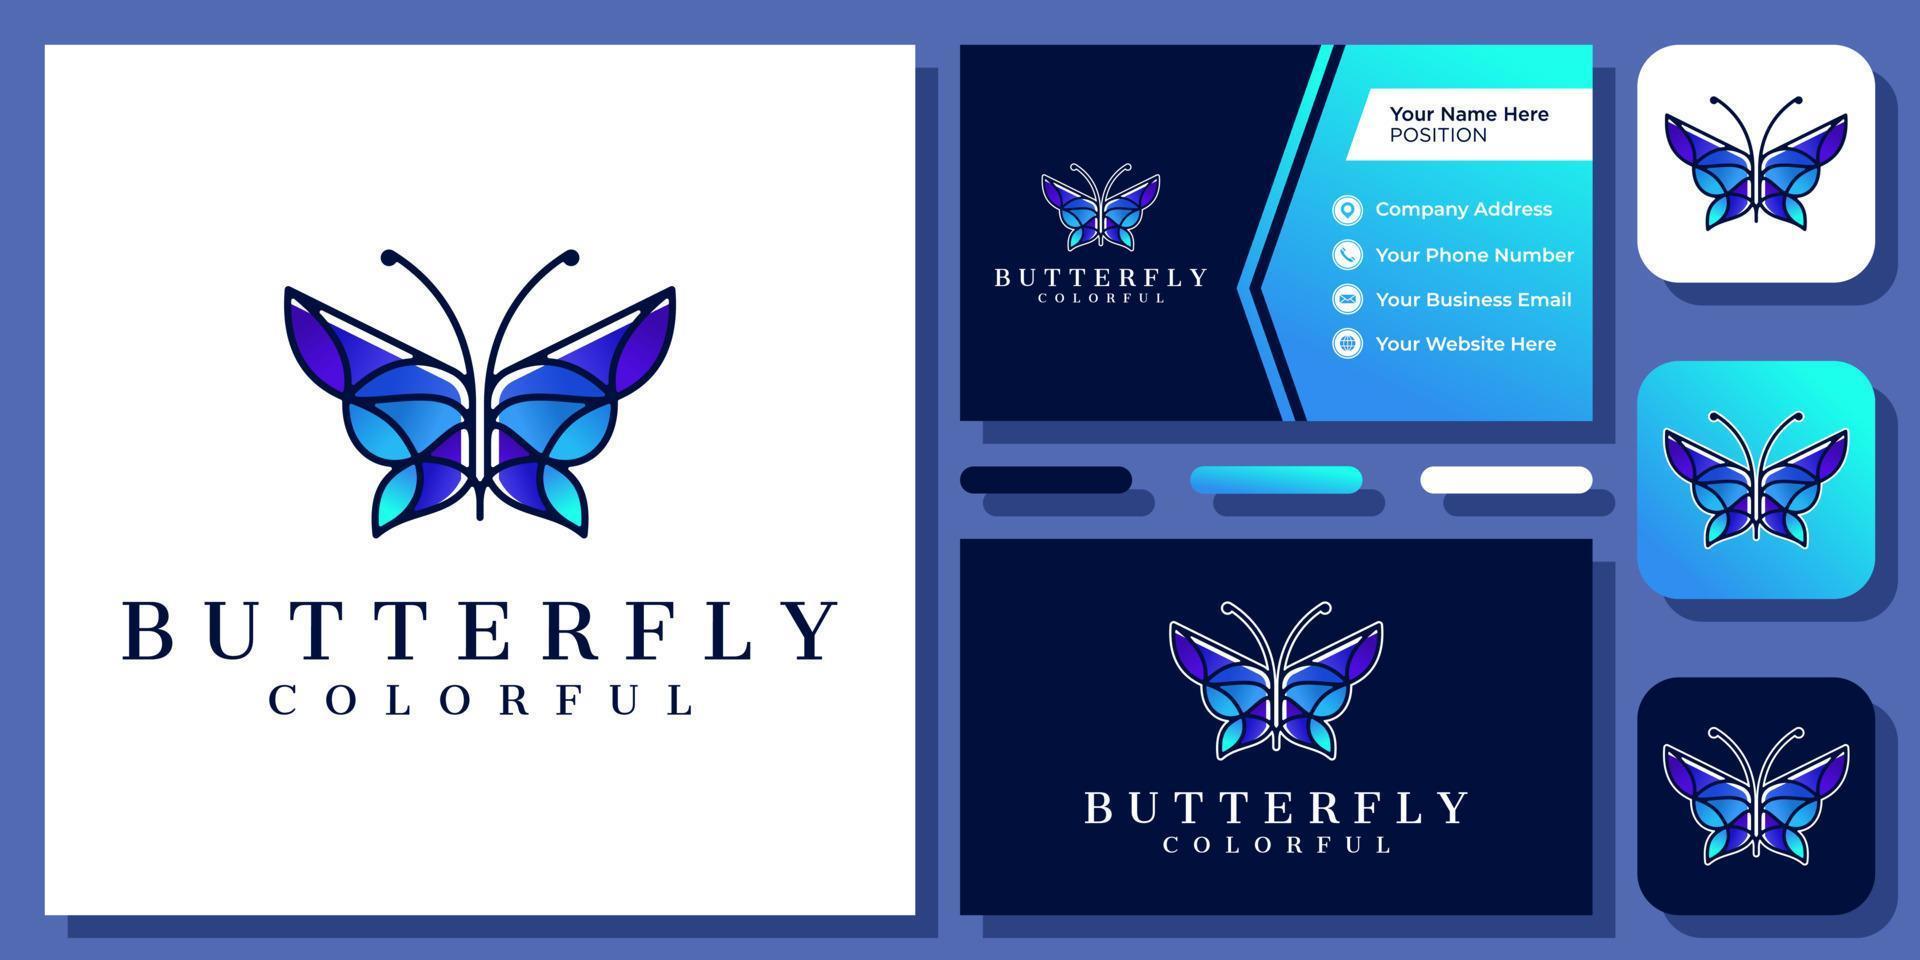 Schmetterling bunt Flügel schön Tier Insekt Fliege Natur elegantes Vektor-Logo-Design mit Visitenkarte vektor